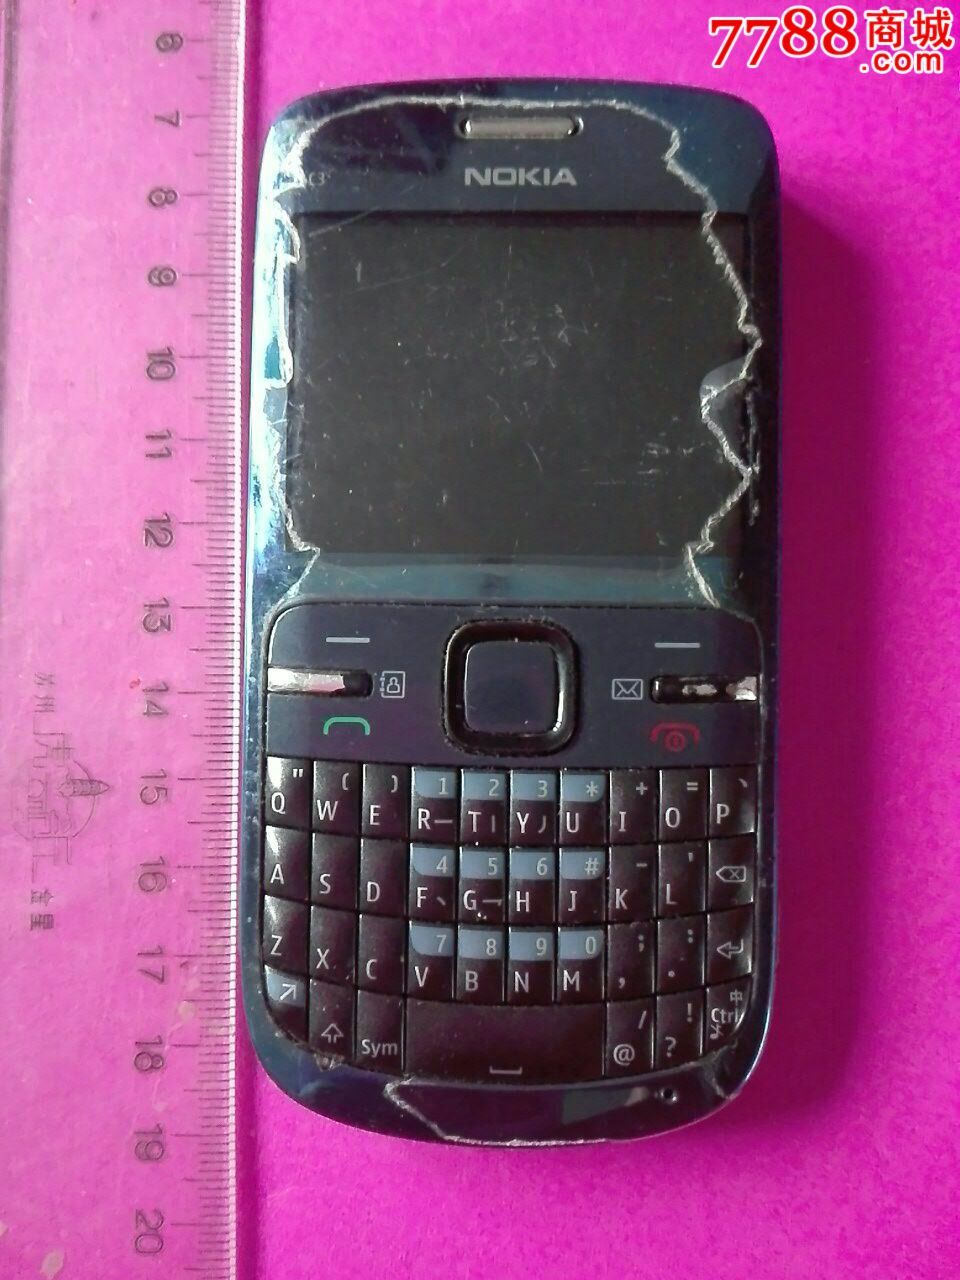 精典老手机,诺基亚c3